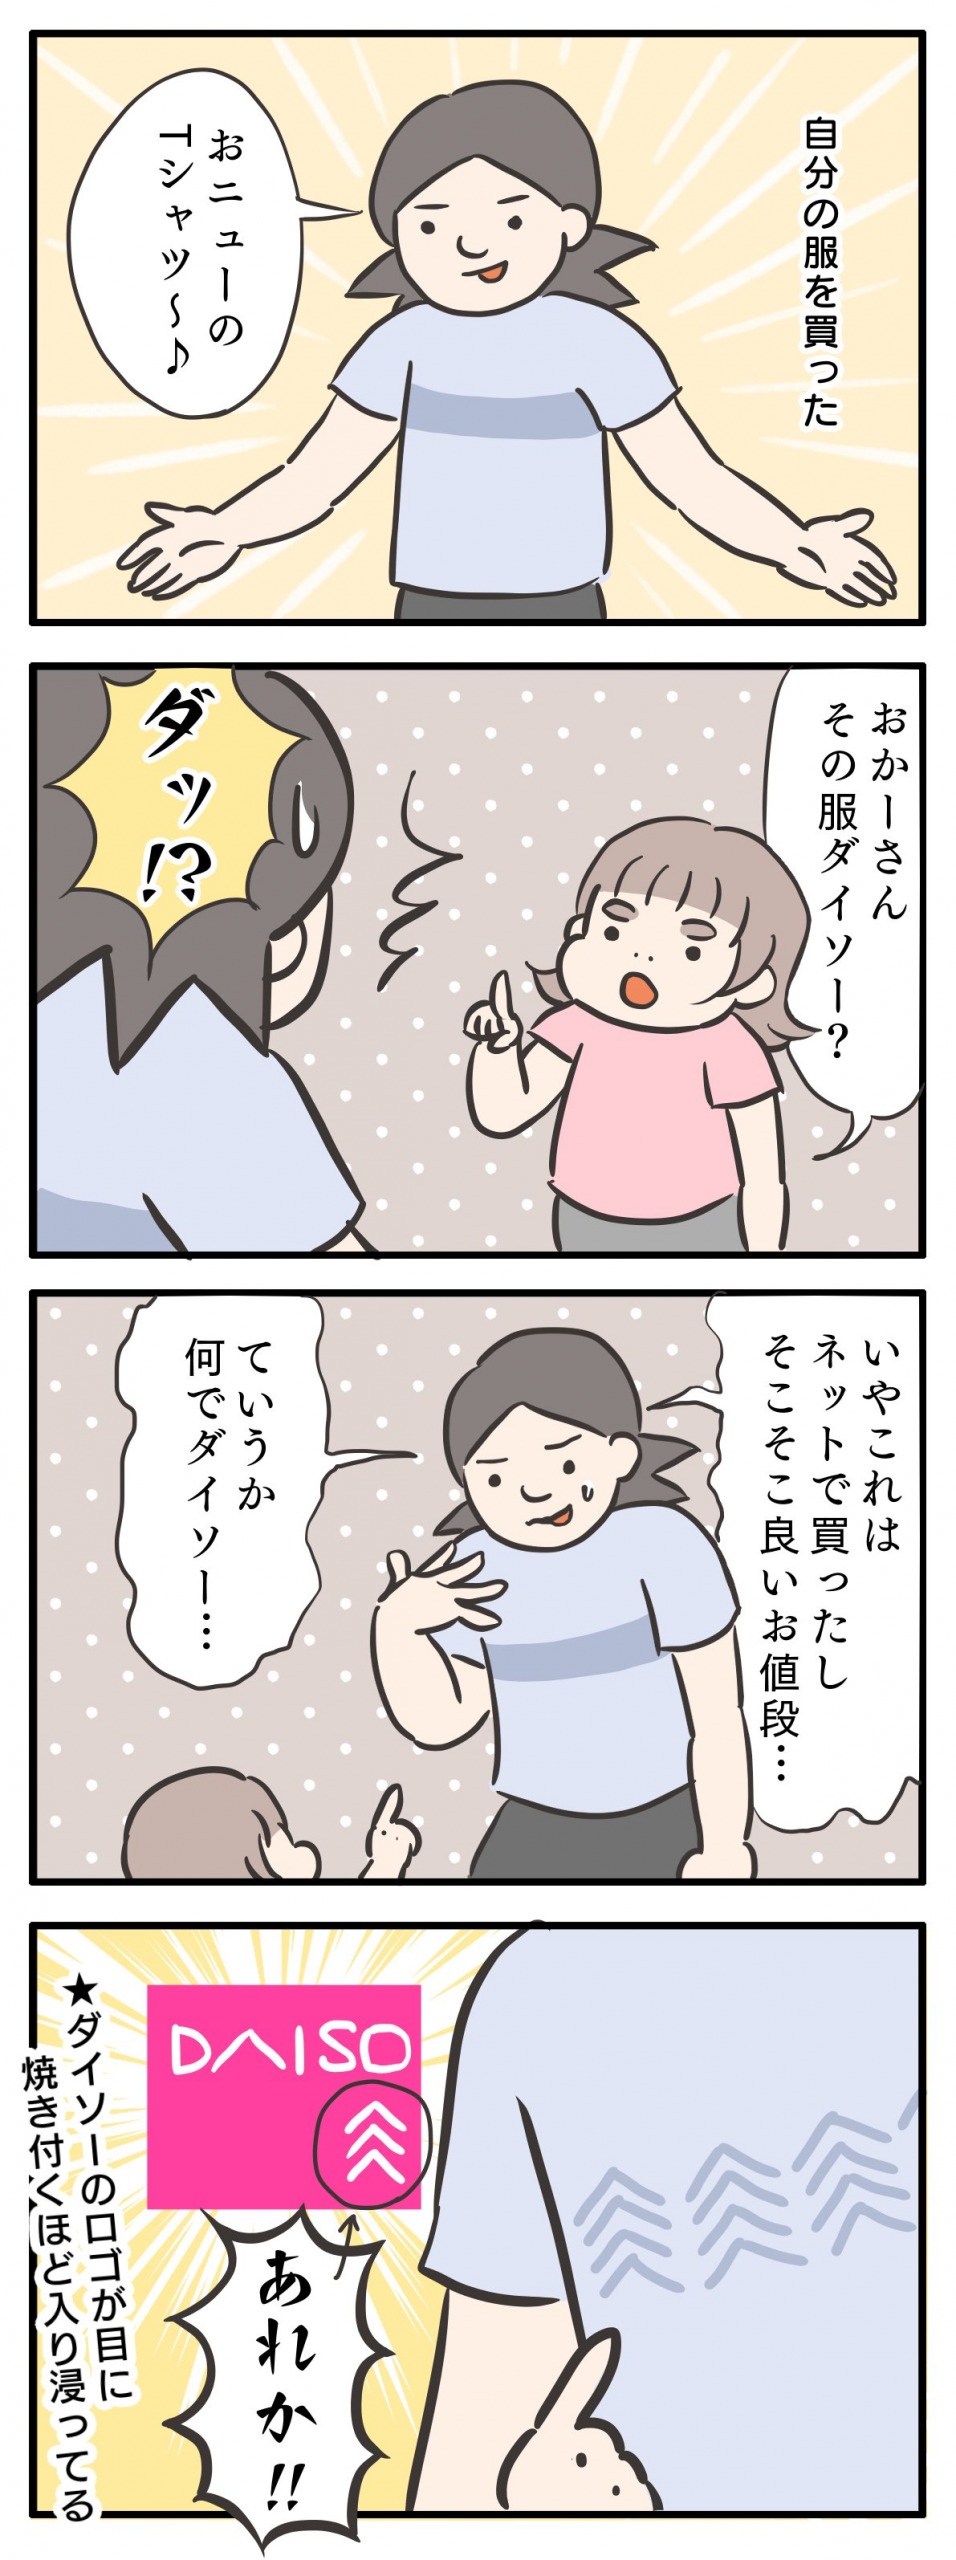 ゆるゆるみさんの漫画1